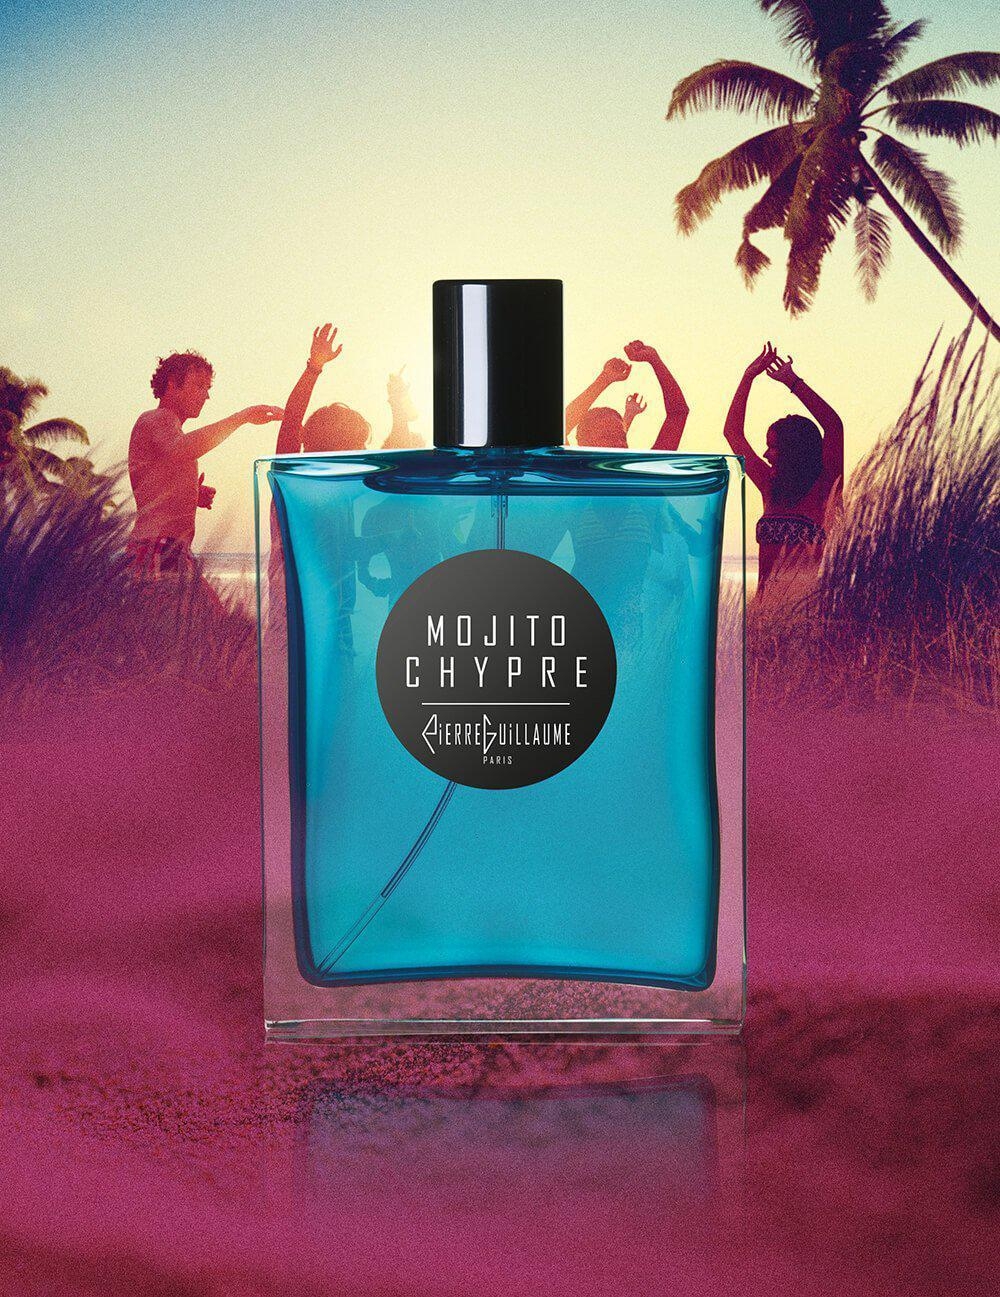 Mojito Chypre-eau de parfum-Pierre Guillaume - Croisiere-Perfume Lounge